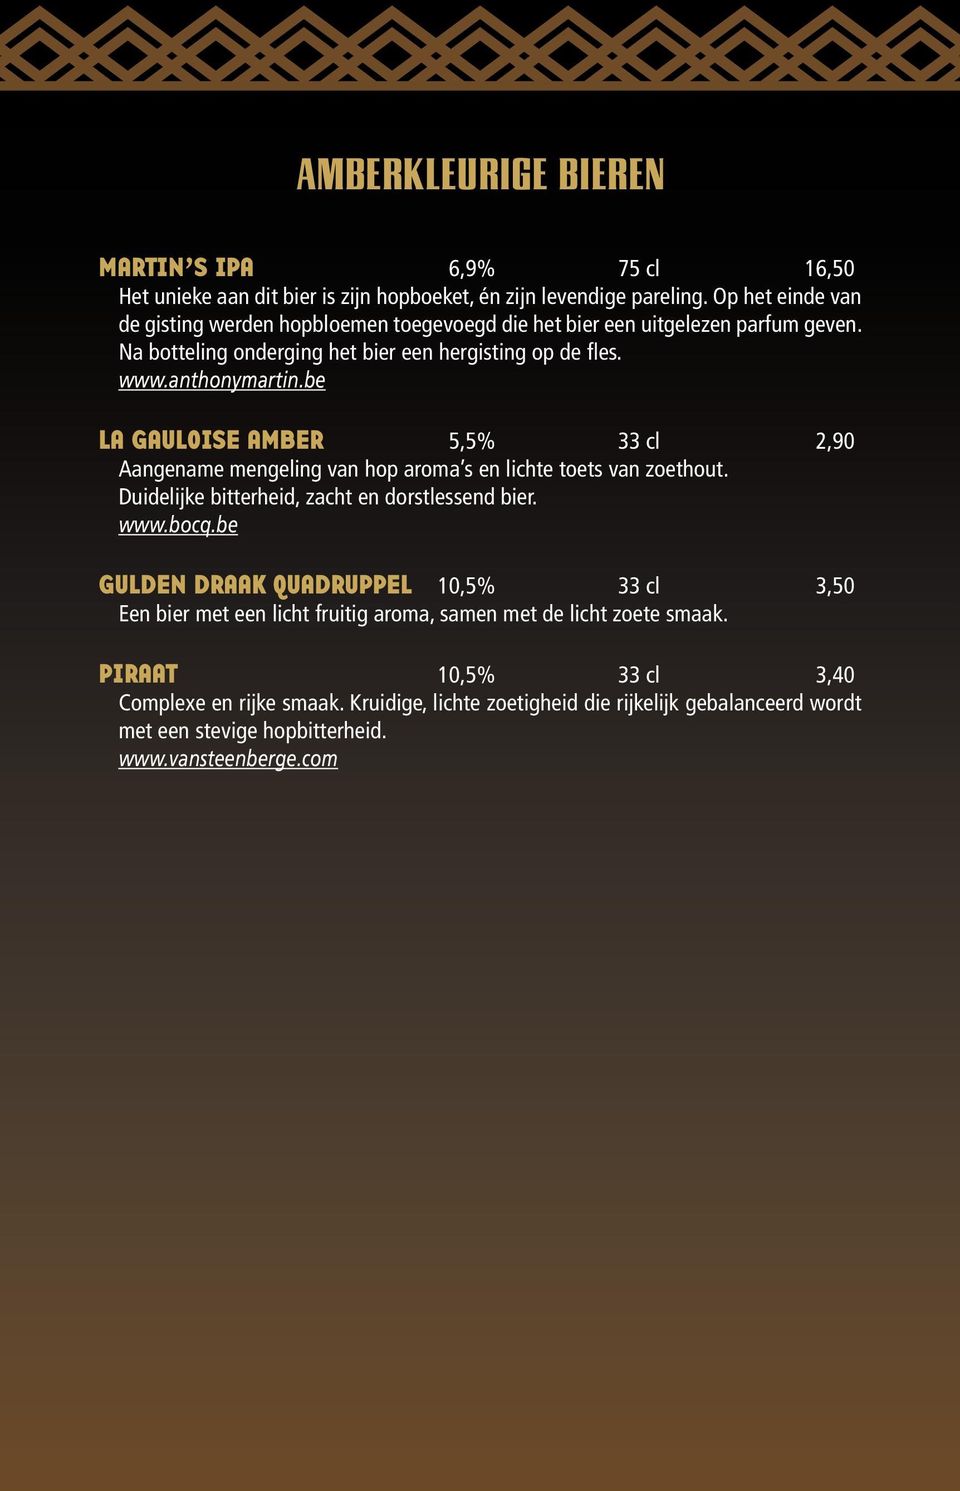 be La Gauloise Amber 5,5% 33 cl 2,90 Aangename mengeling van hop aroma s en lichte toets van zoethout. Duidelijke bitterheid, zacht en dorstlessend bier. www.bocq.